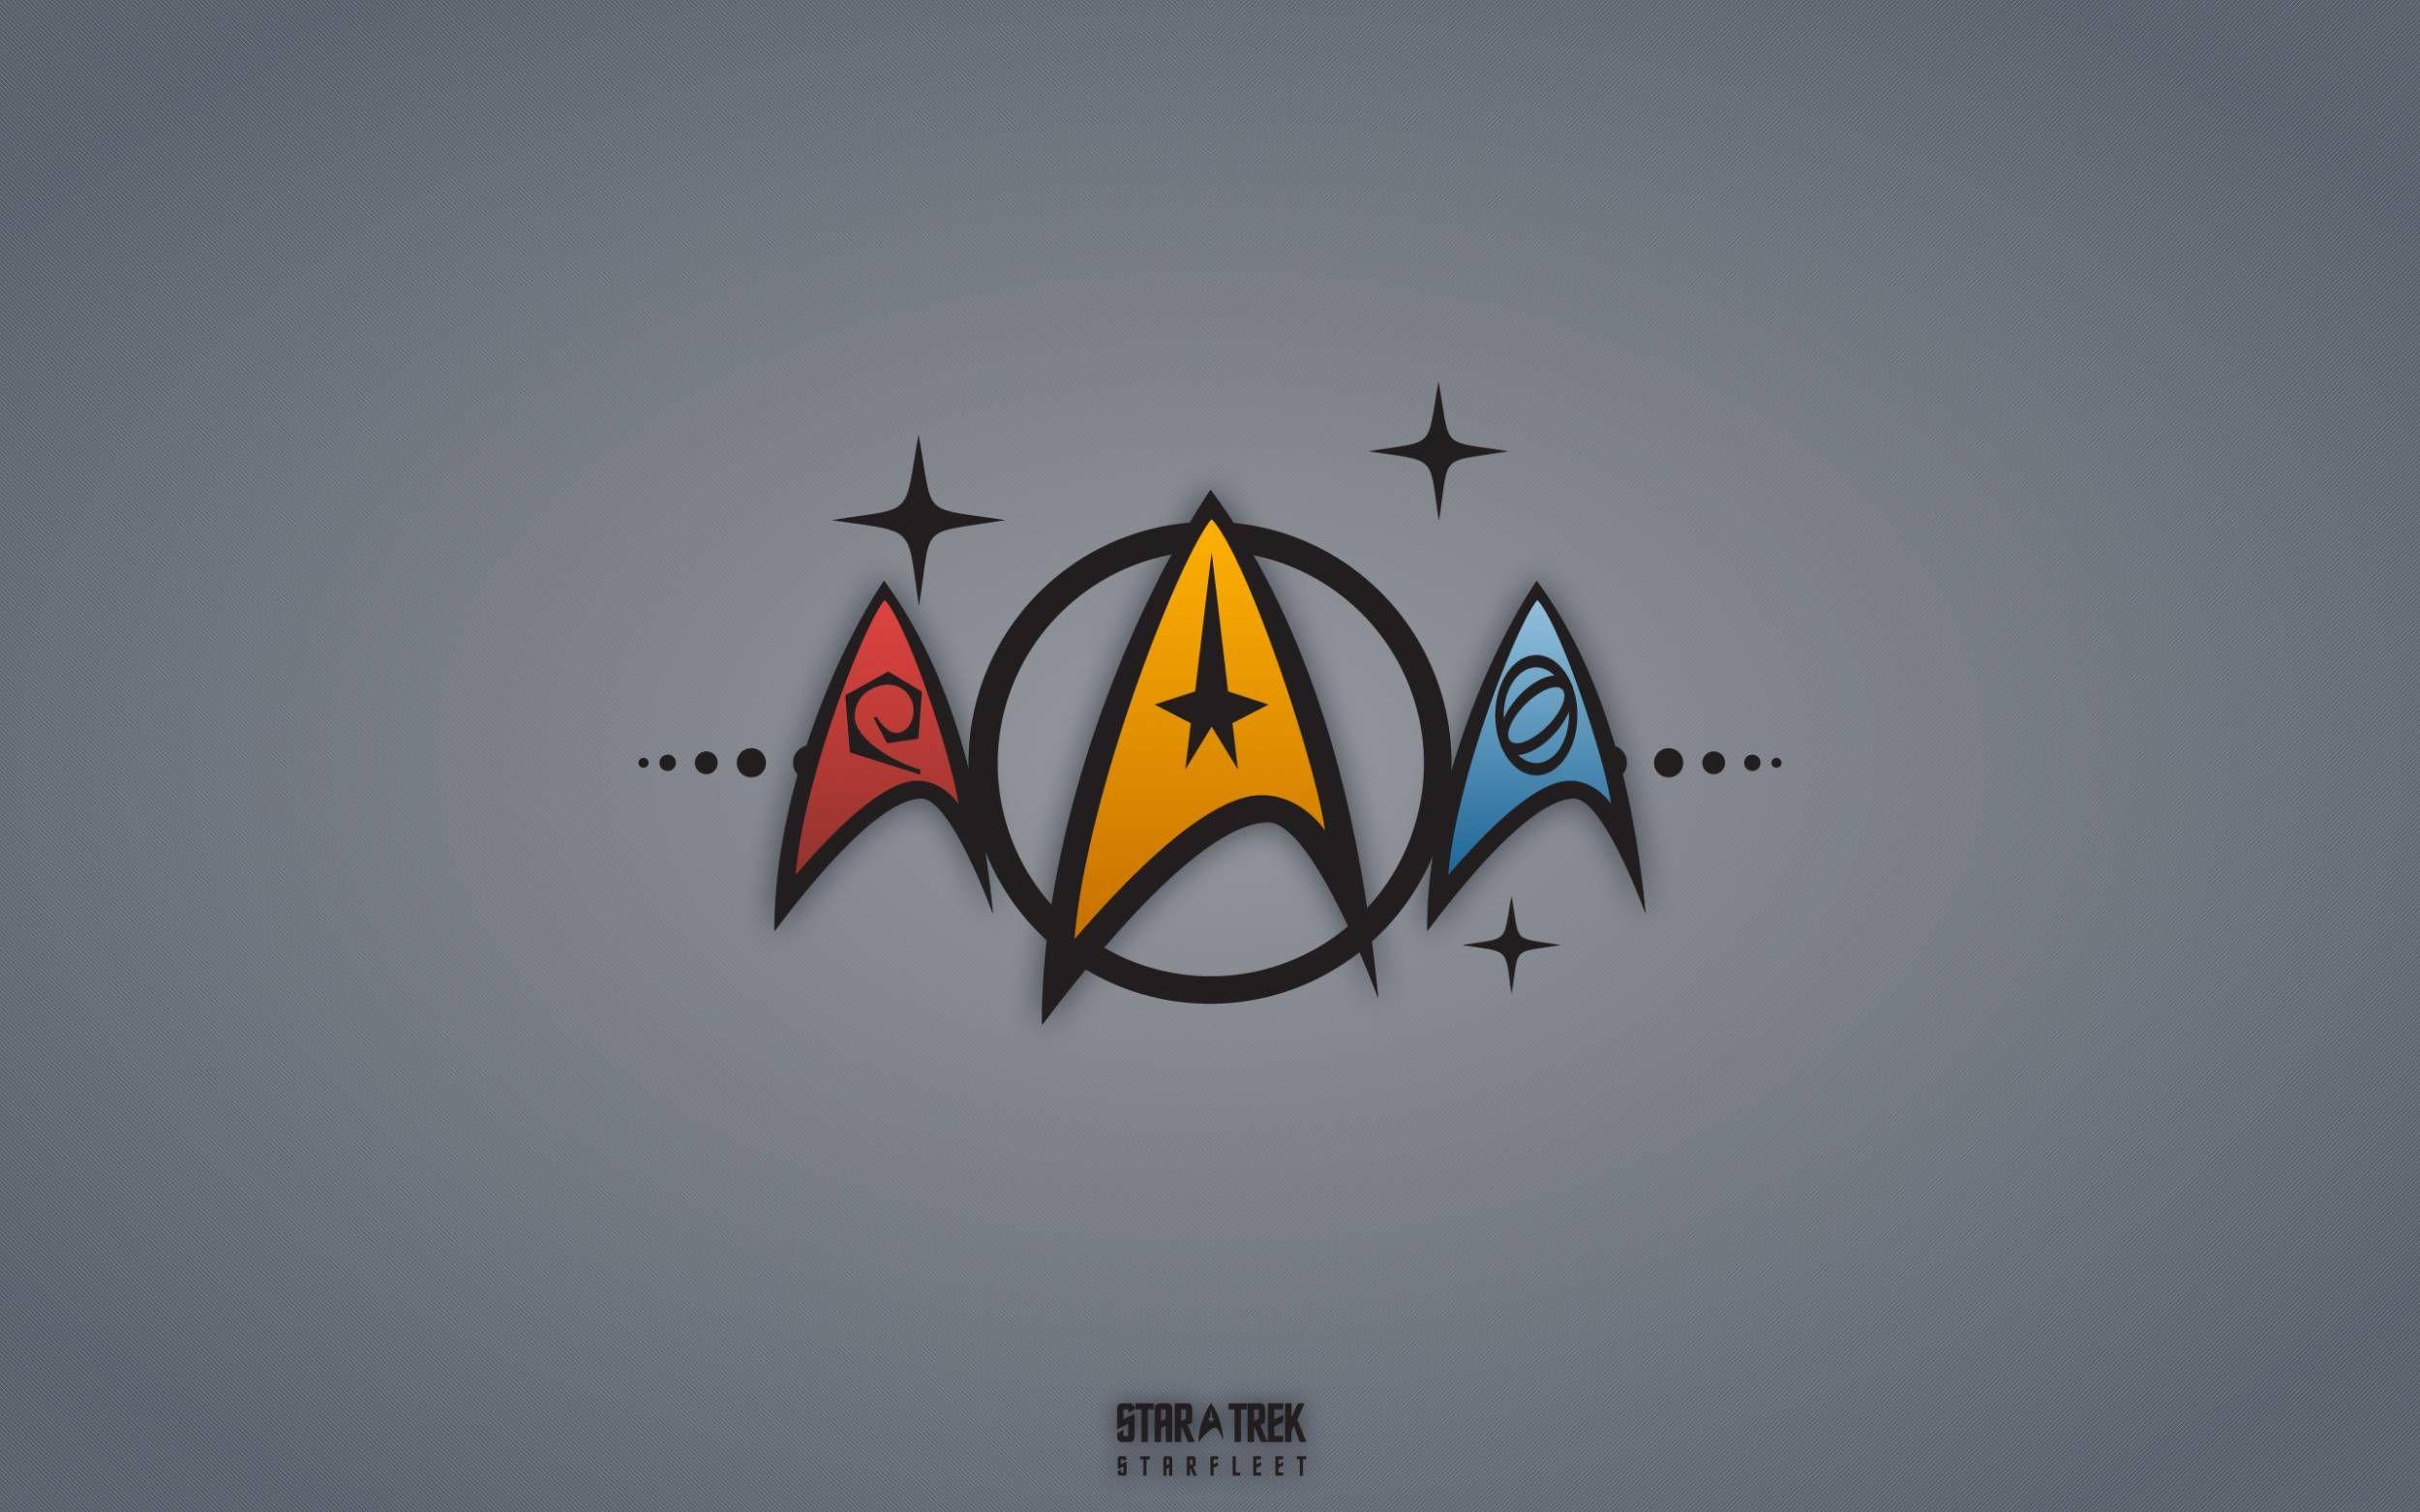 Star Trek Wallpaper for Free